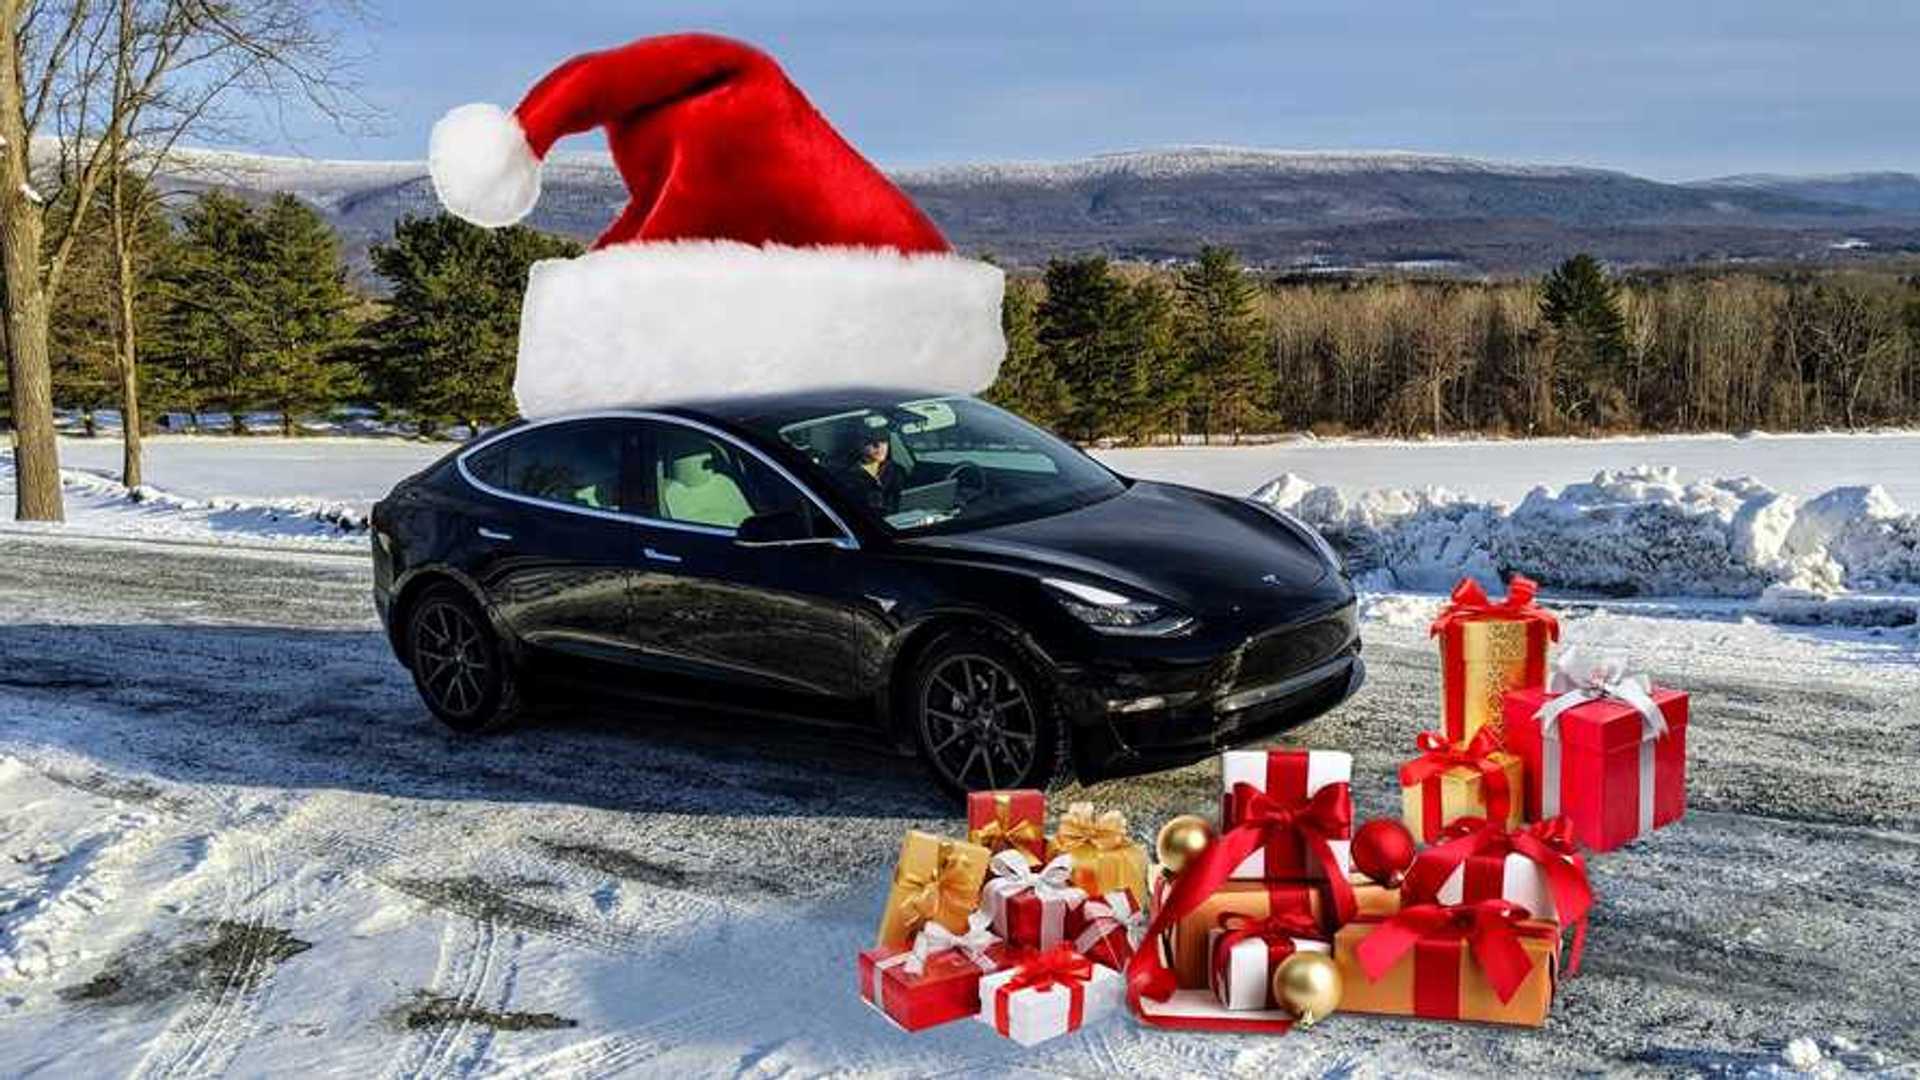 S3XY Tesla - Model S, Model 3, Model X, Model Y - Elon Musk - Tesla Car -  Mug